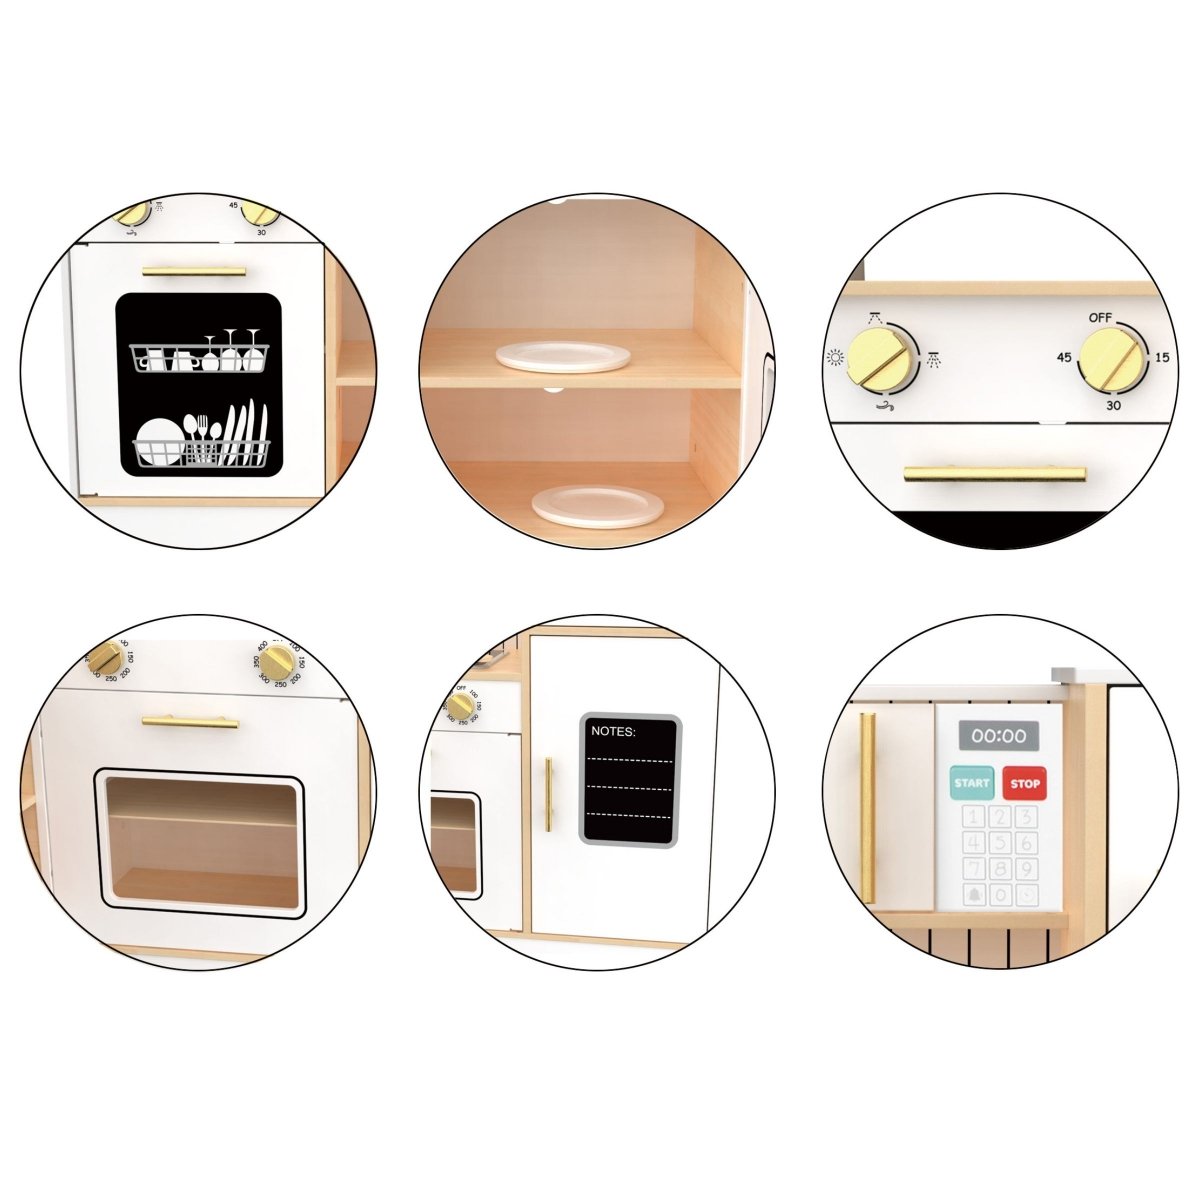 Drewniana, interaktywna kuchnia narożna XXXL z lodówką, mikrofalą, piekarnikiem, zmywarką i akcesoriami - biała